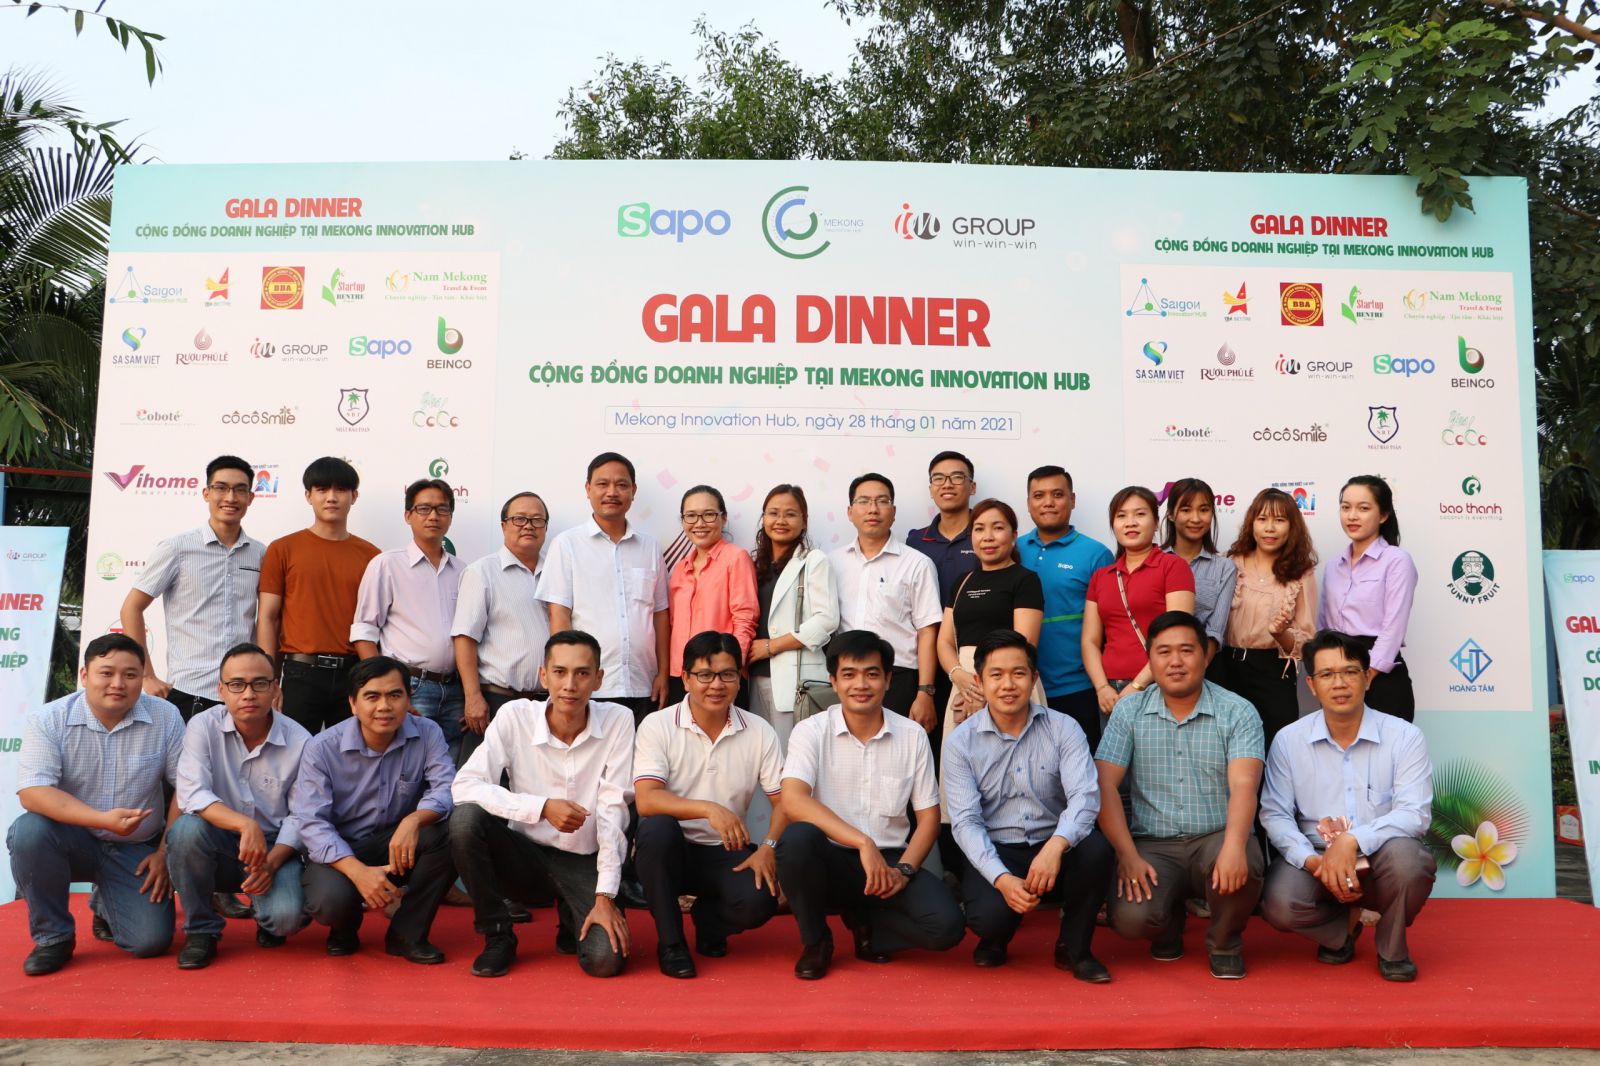 Gala Dinner cộng đồng doanh nghiệp tại Mekong Innovation Hub.